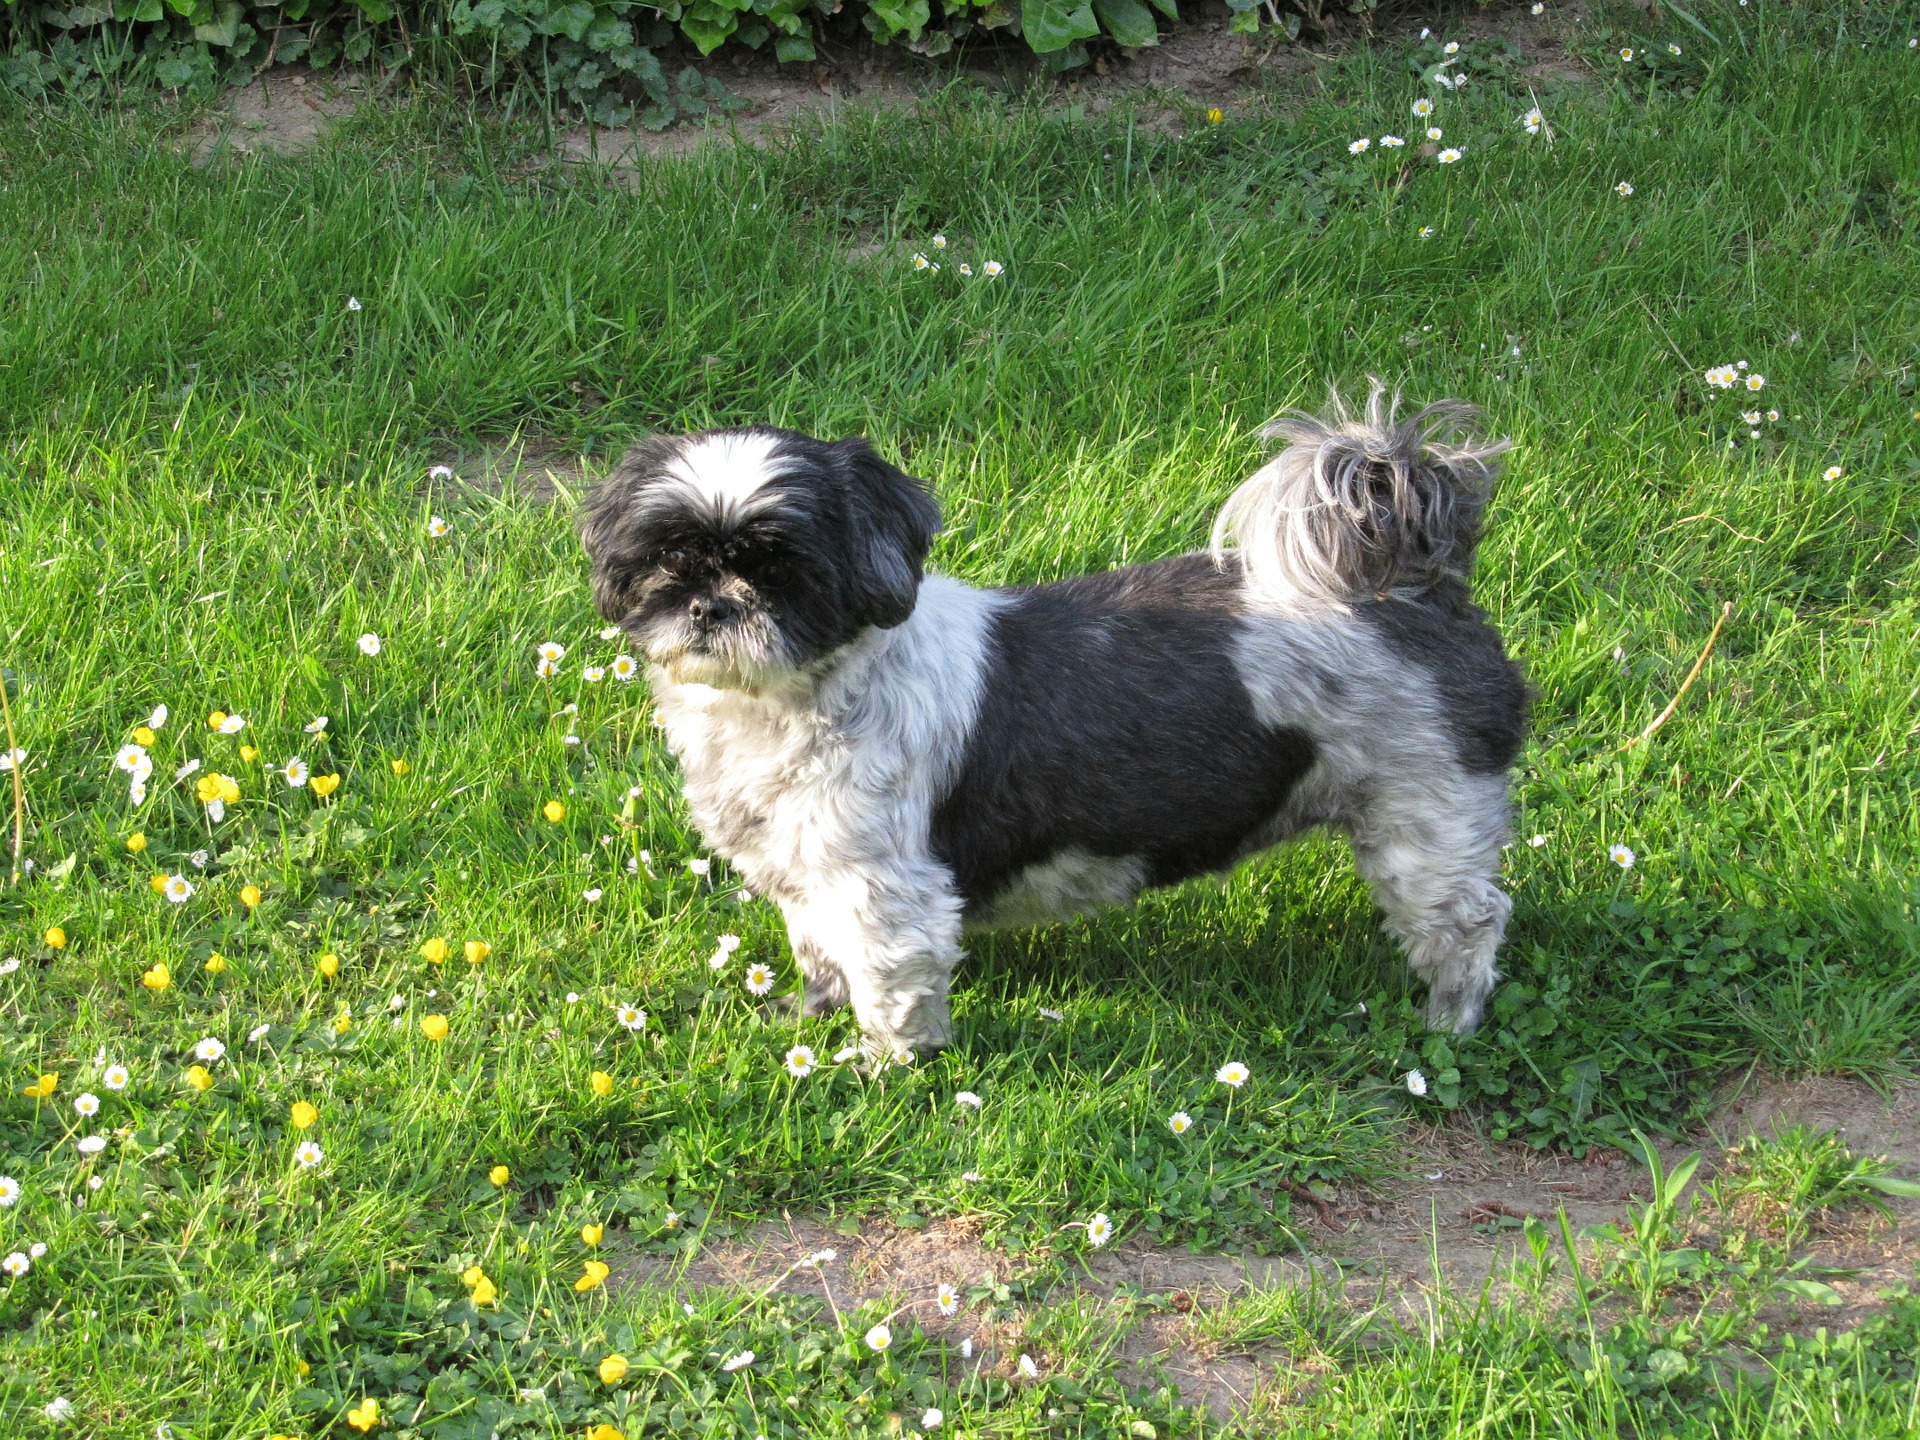 Le shih tzu fait partie des chiens de petite taille au pelage long et dense. En raison de la structure de leur crâne, ils sont très sujets à l'accumulation de tartre, aux problèmes de canaux lacrymaux et aux difficultés respiratoires.